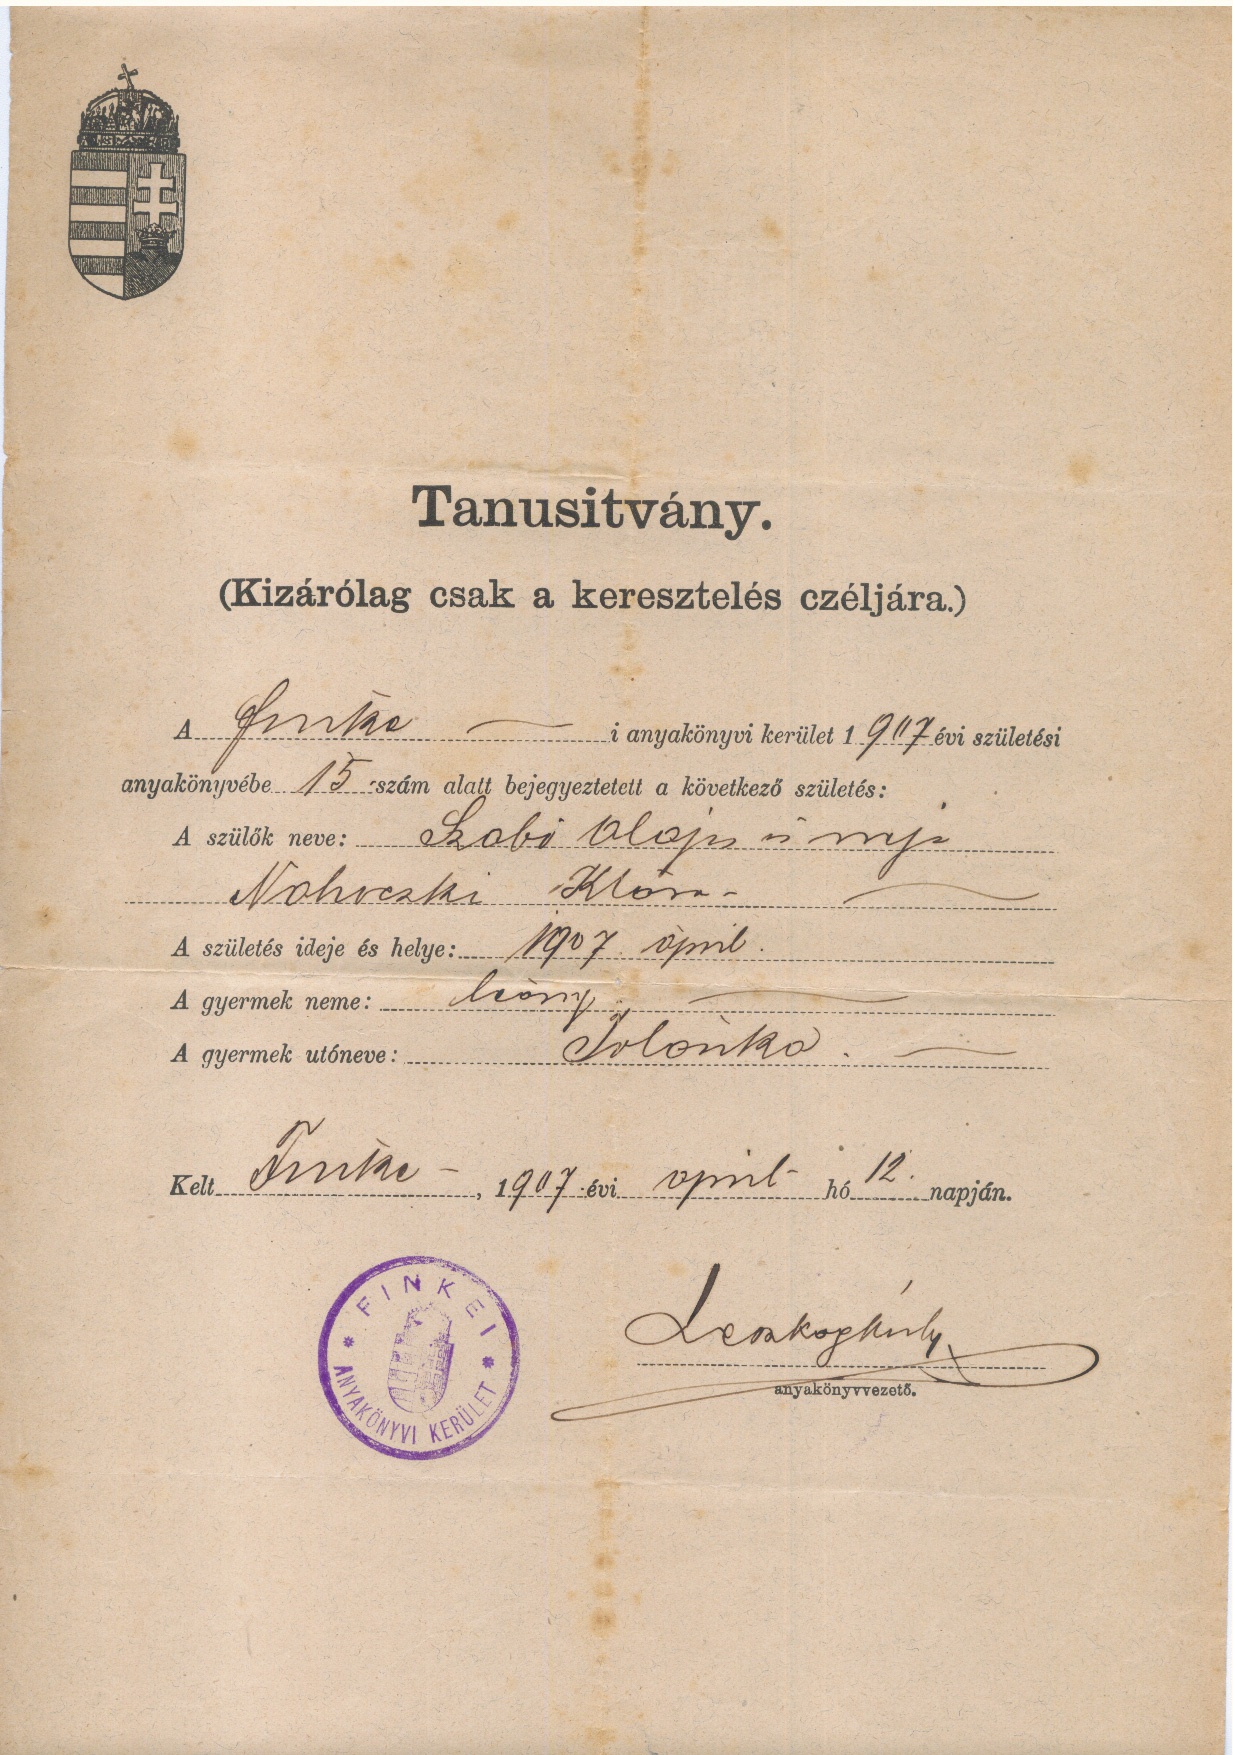 Születési anyakönyvi tanusítvány. (Gömöri Múzeum, Putnok CC BY-NC-SA)